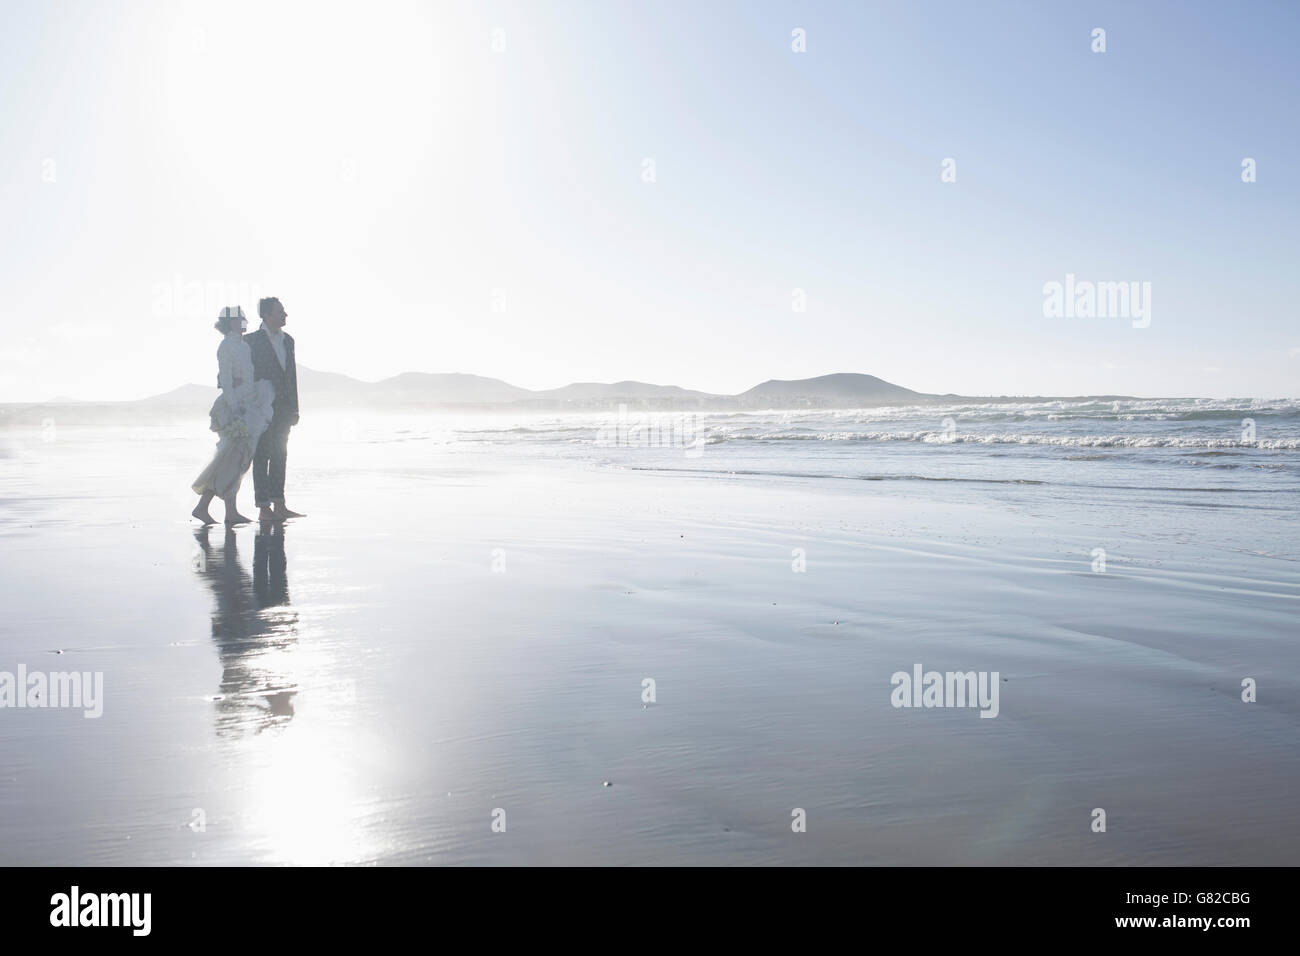 La longueur totale de l'amour couple standing at beach Banque D'Images